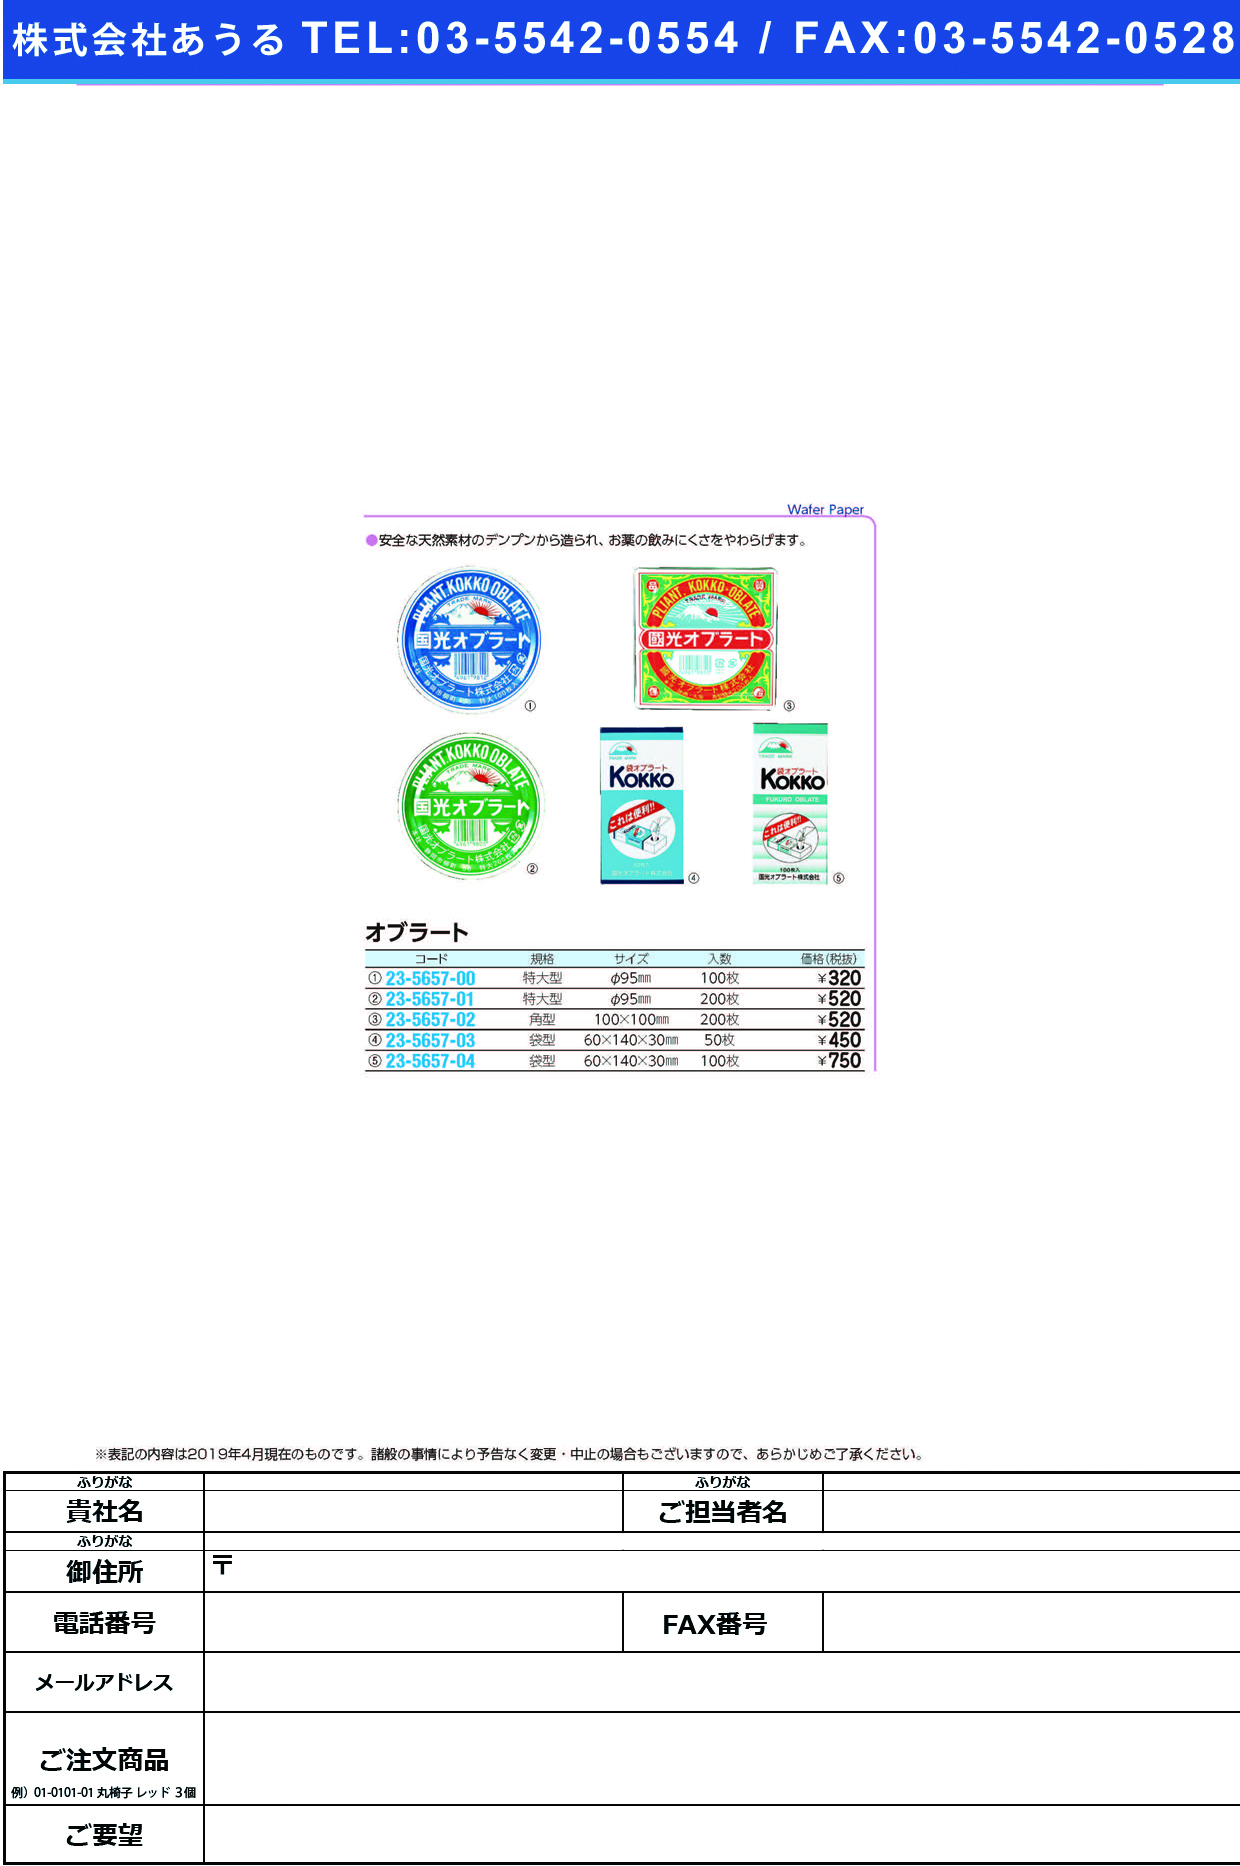 (23-5657-03)国光オブラート袋型 50ﾏｲ ｺｯｺｳｵﾌﾞﾗｰﾄﾌｸﾛｶﾞﾀ【1個単位】【2019年カタログ商品】